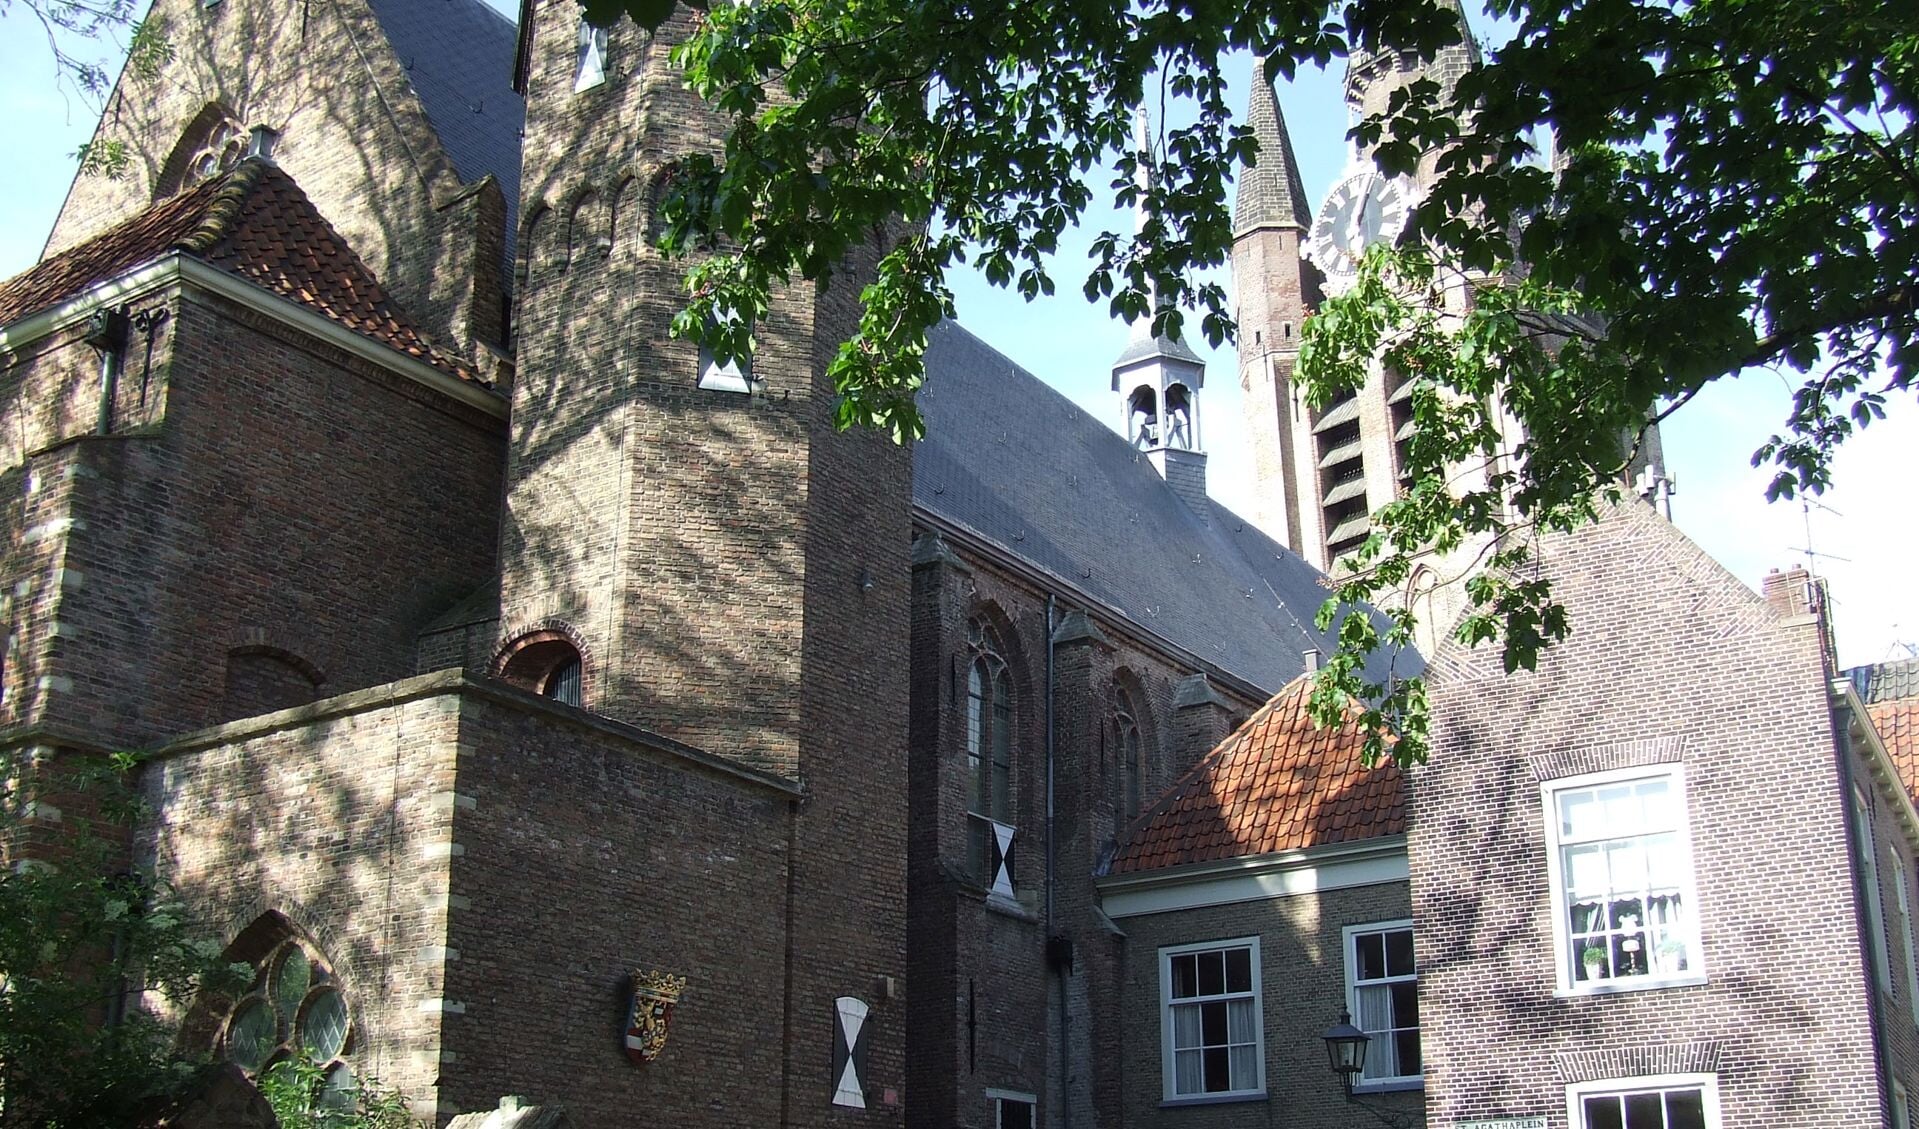 Met de Rotterdampas kun je bijvoorbeeld gratis naar een museum zoals het Prinsenhof. (Foto: EvE)